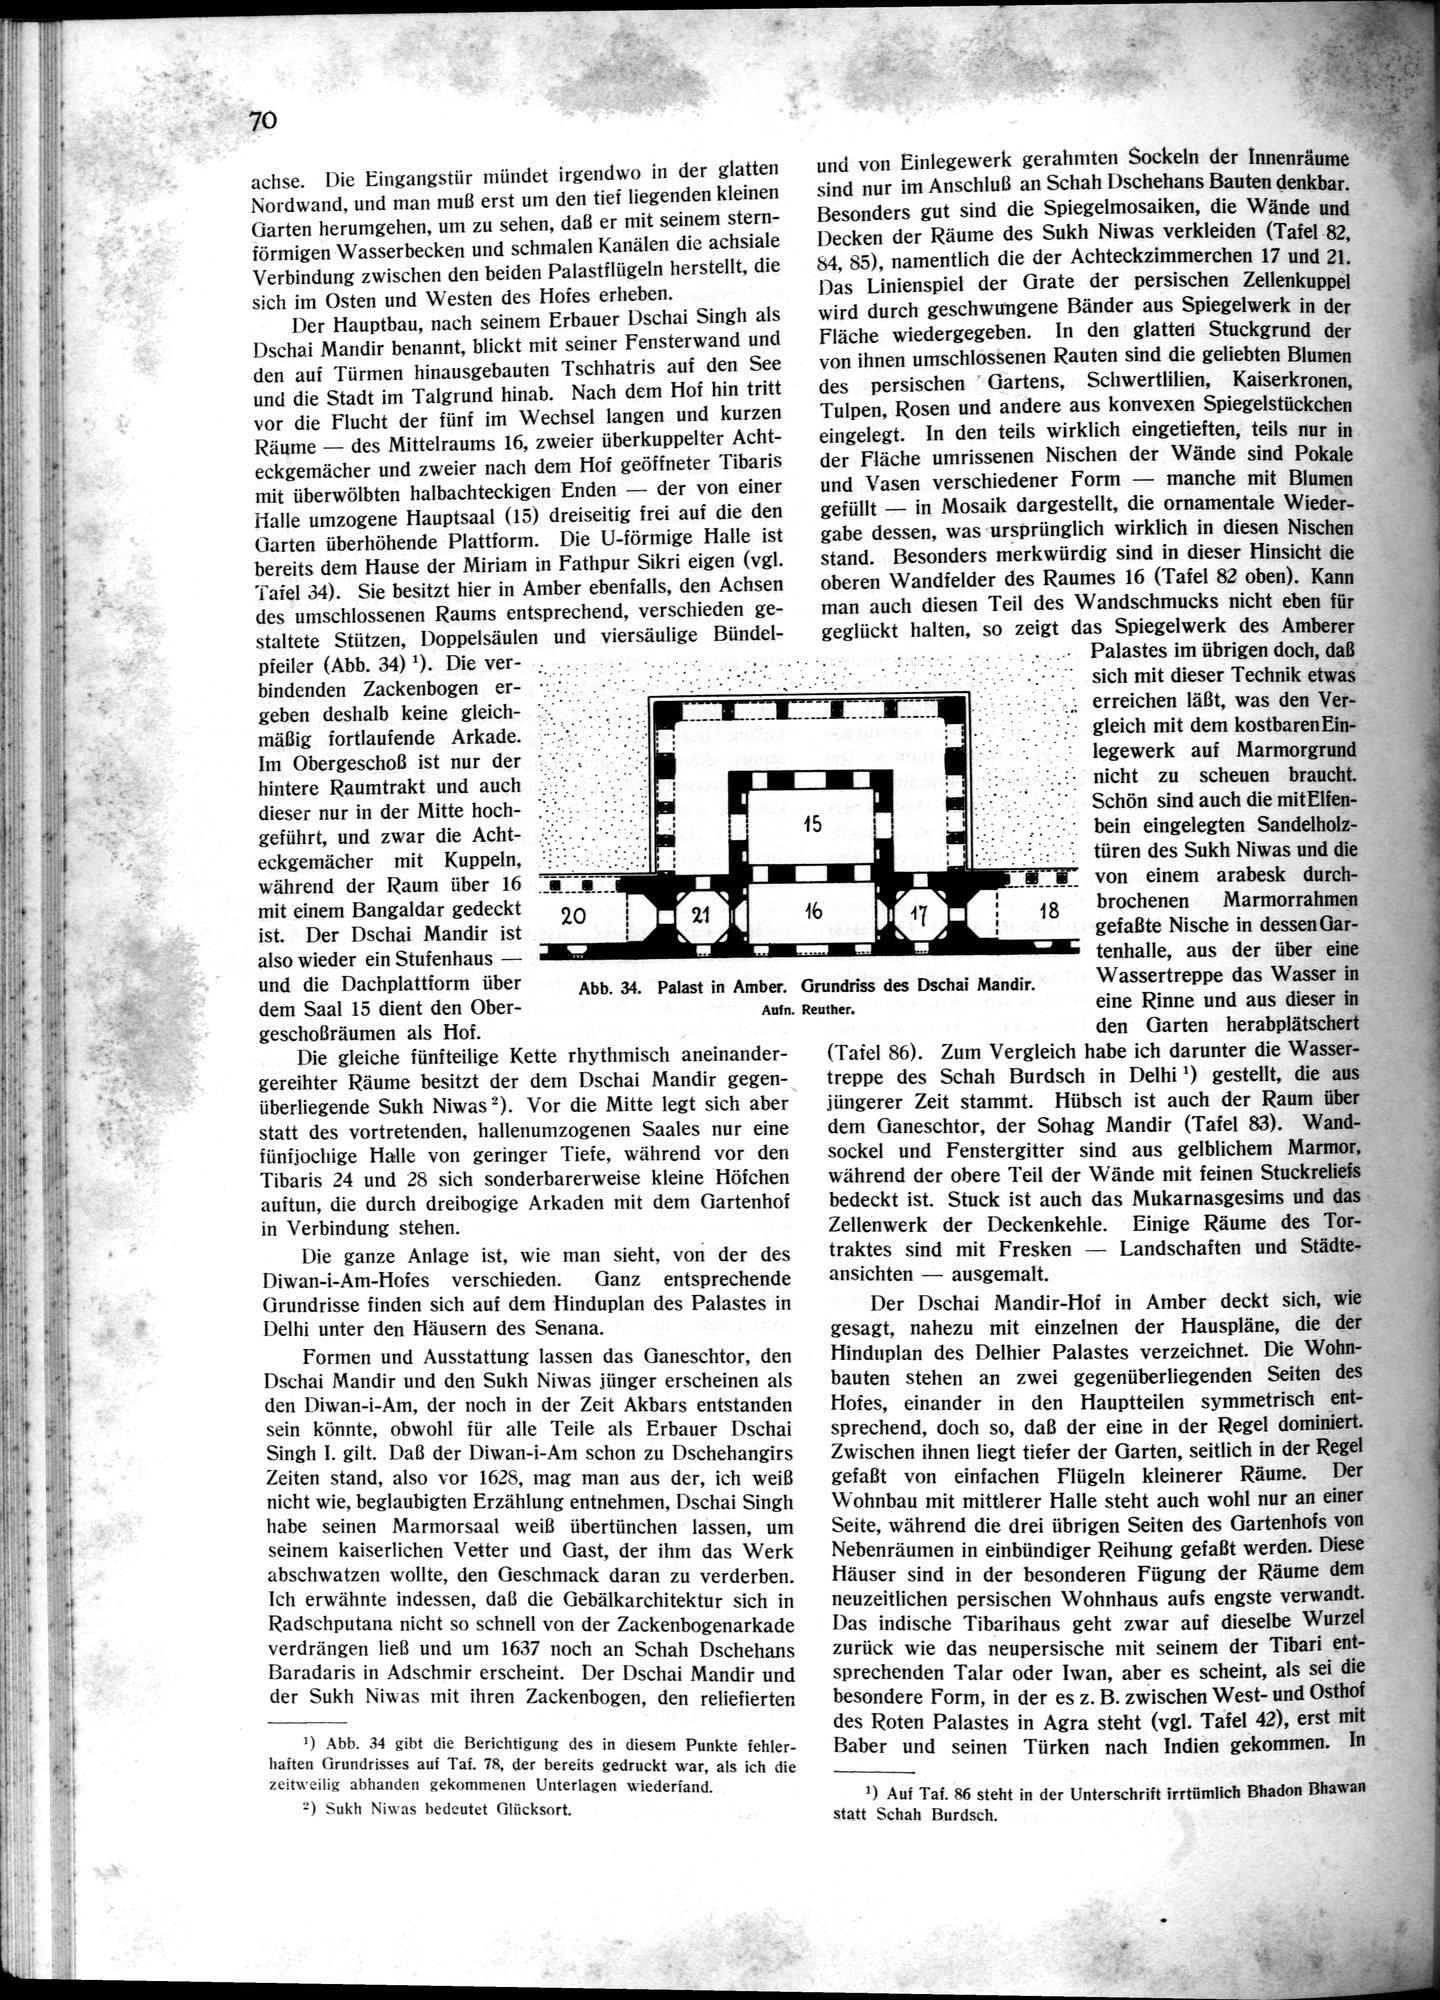 Indische Palaste und Wohnhauser : vol.1 / Page 80 (Grayscale High Resolution Image)